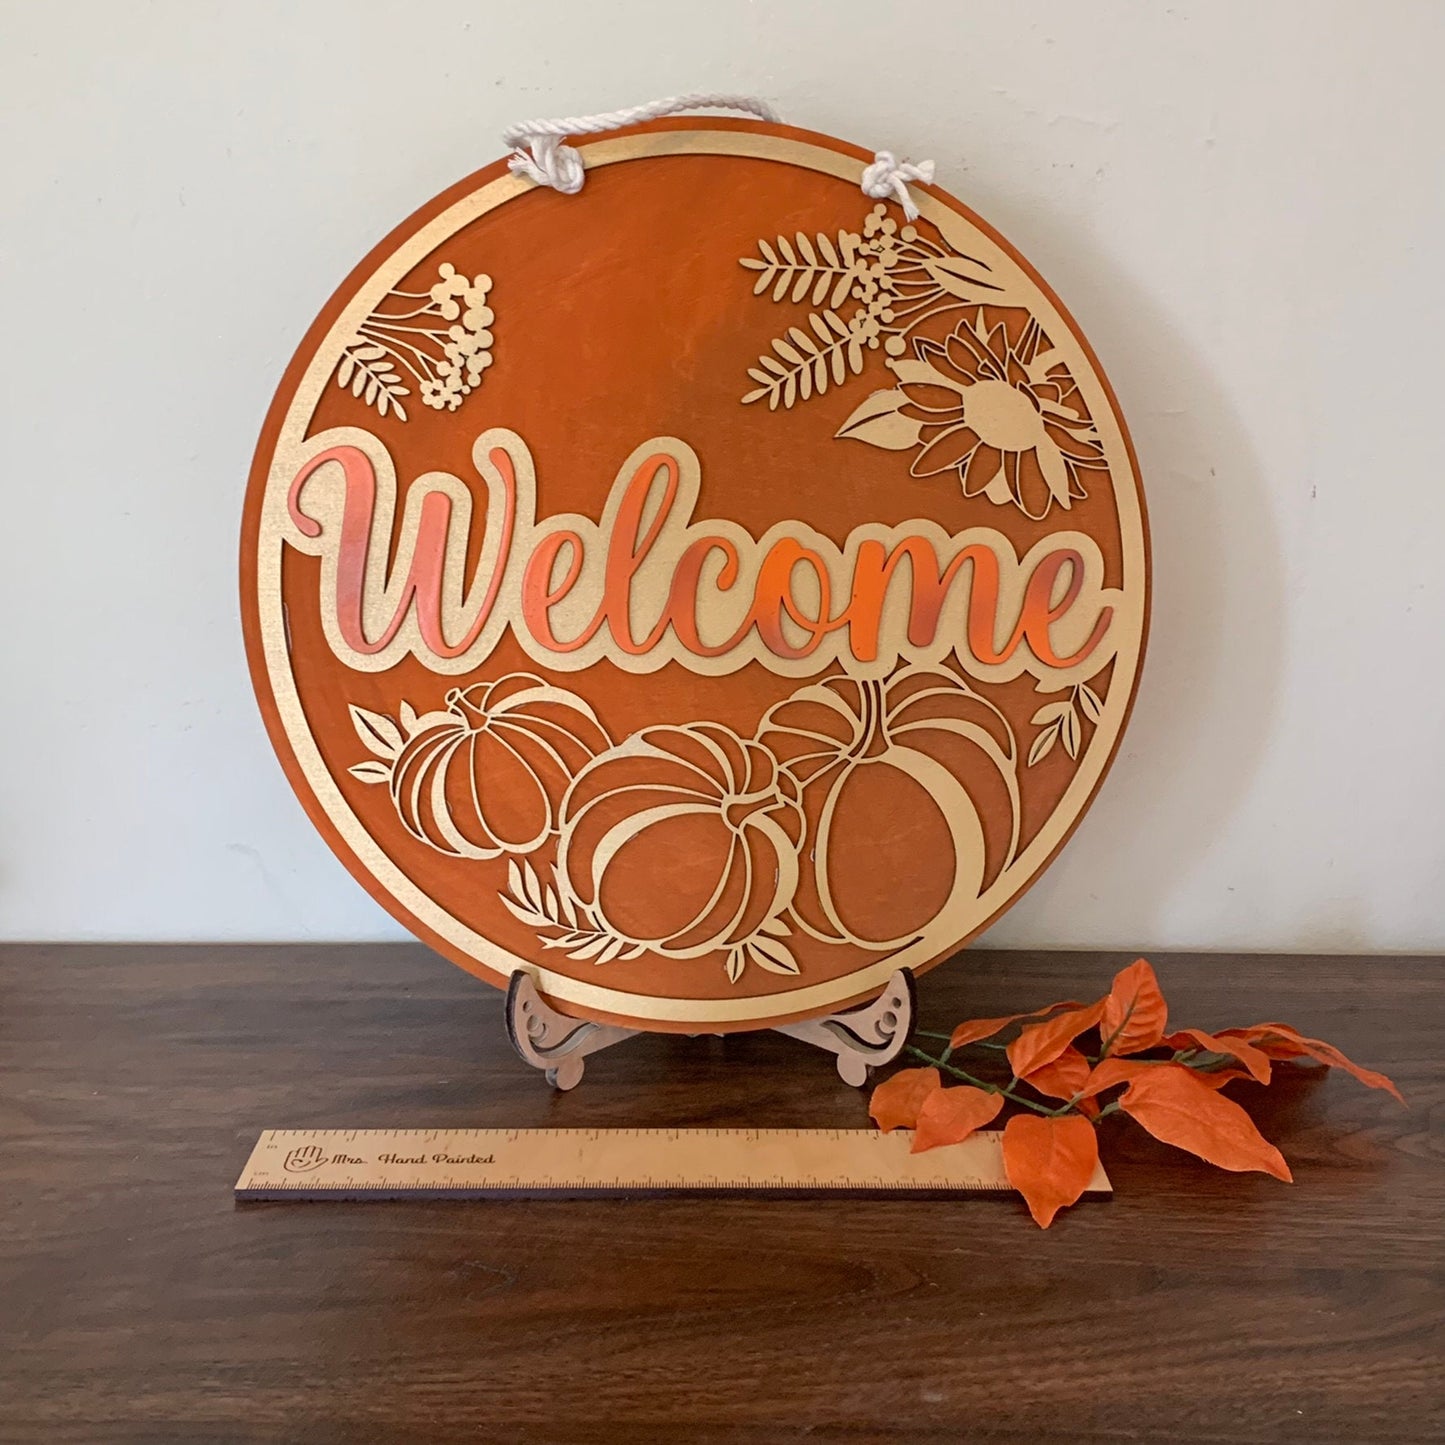 Laser Cut Wood Gold Pumpkin Wreath Welcome Sign - Fall Door Hanger